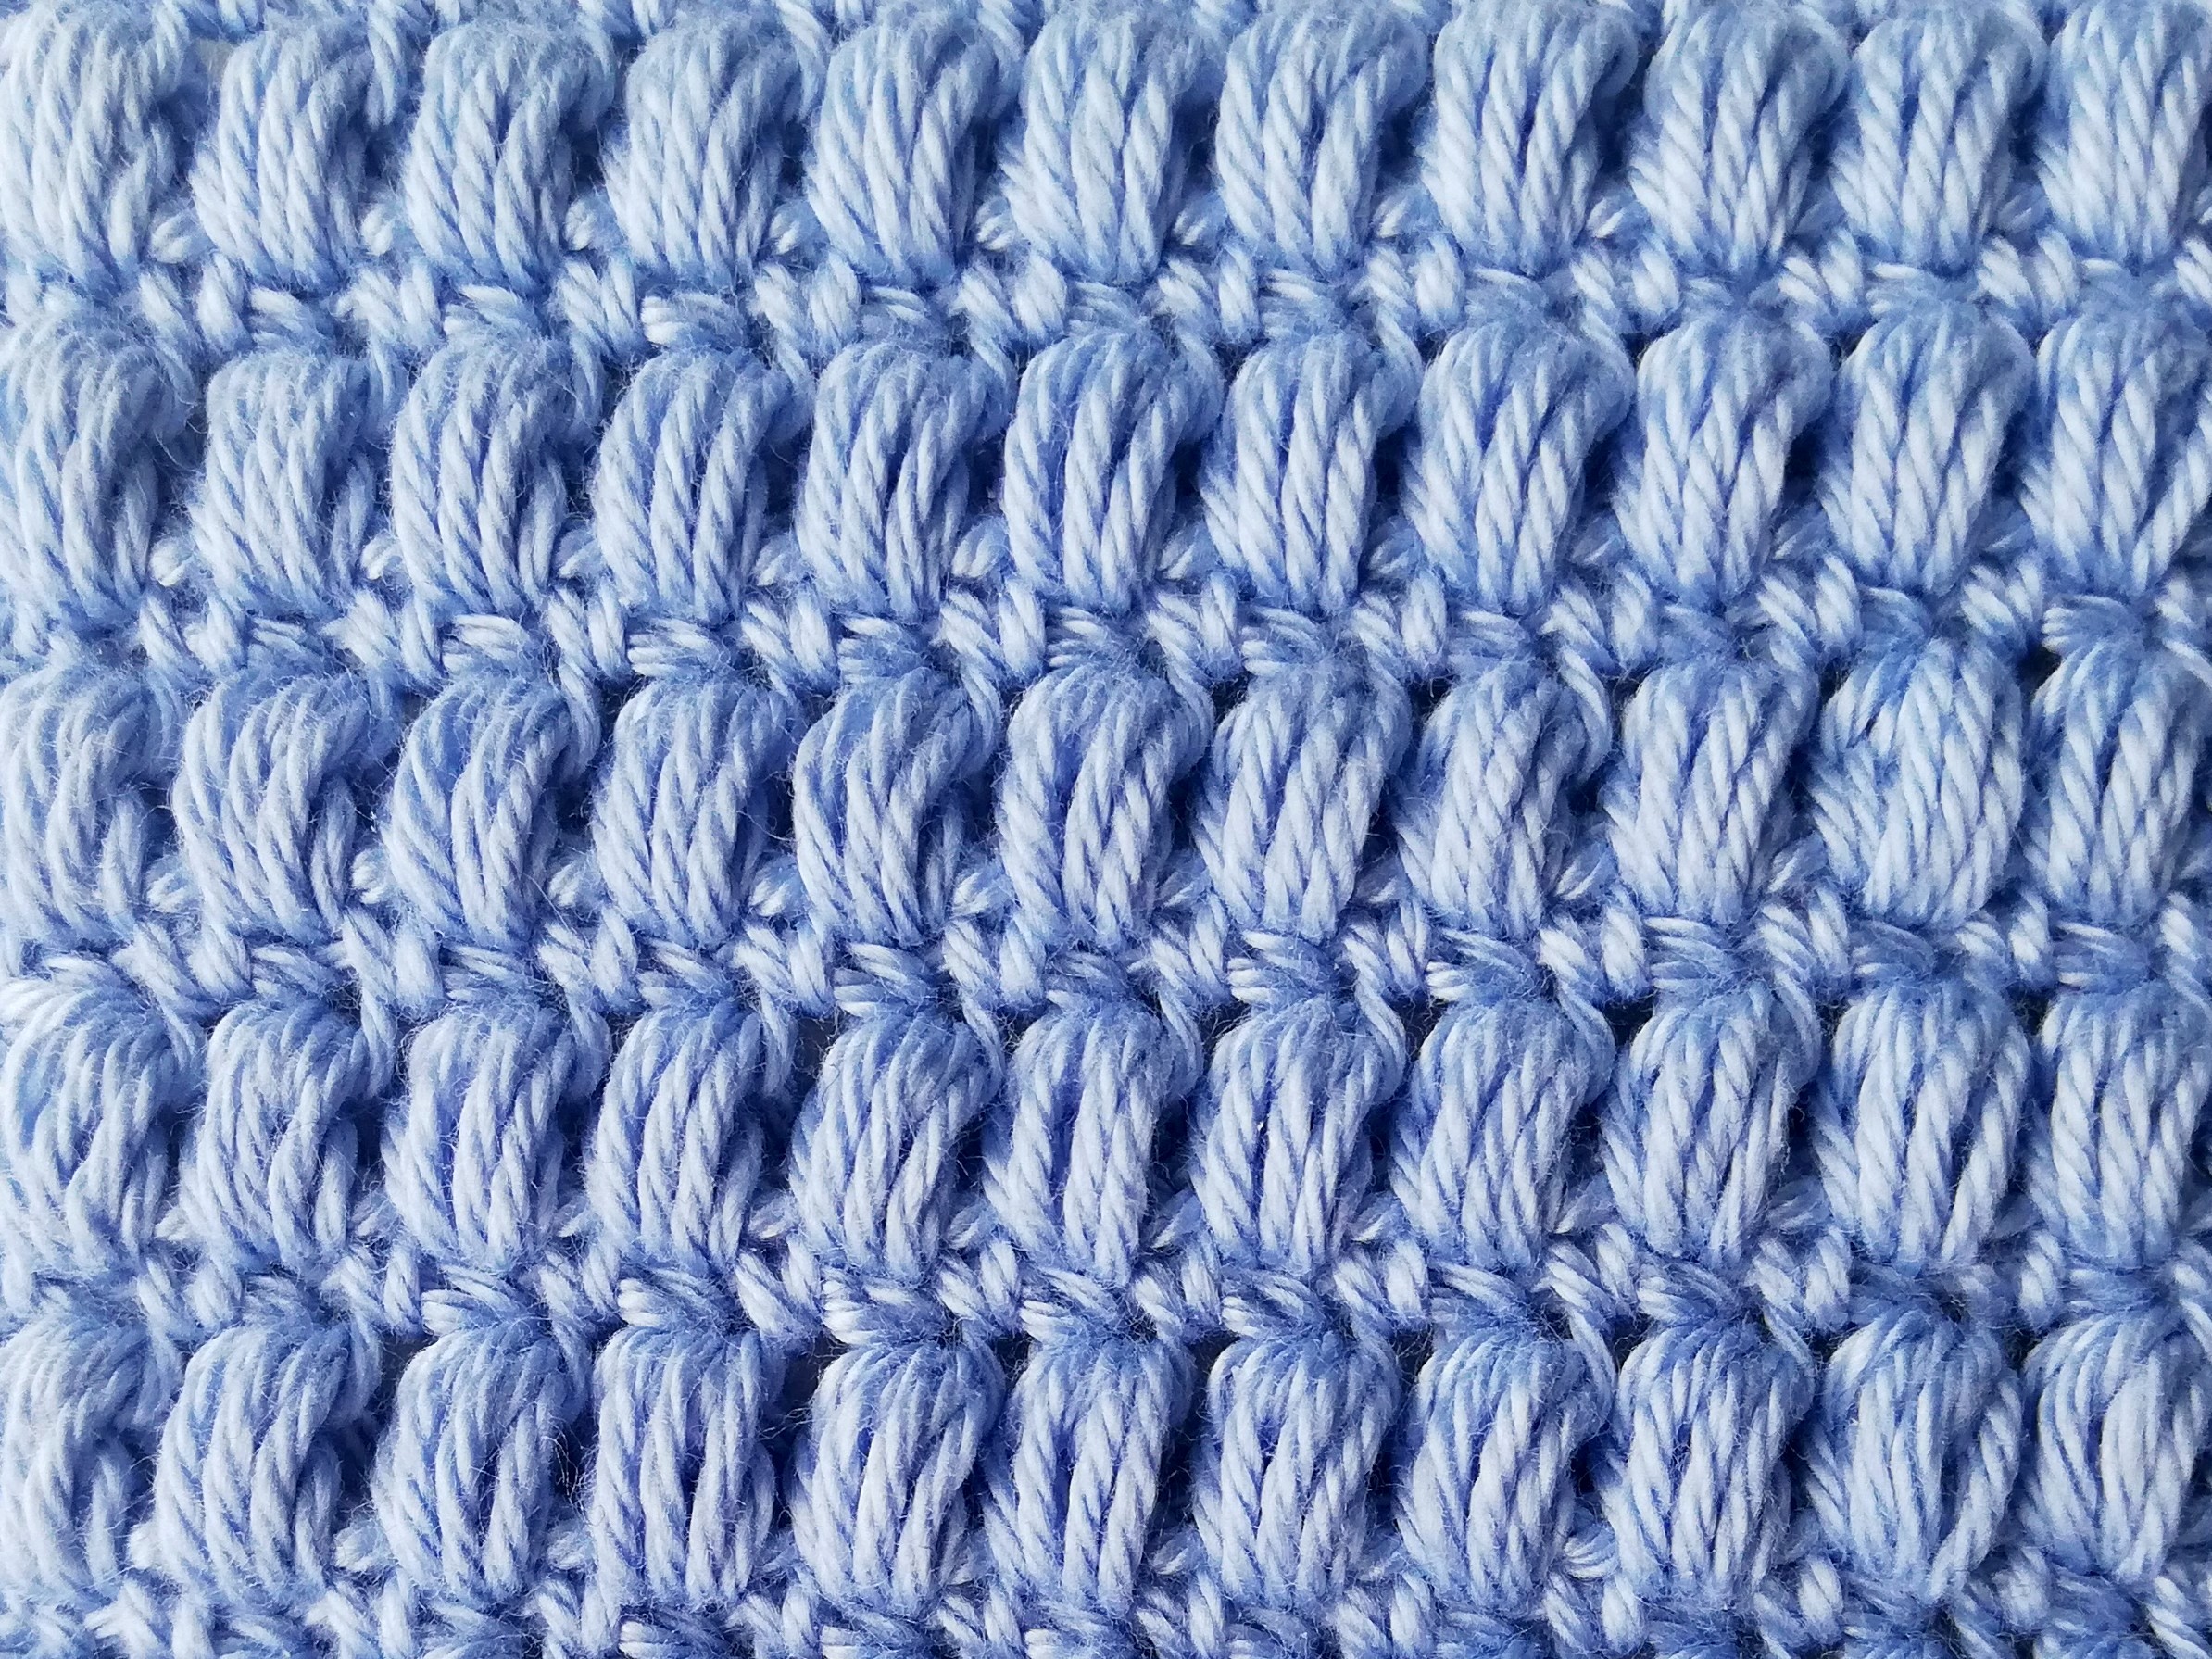 Aligned puff stitch